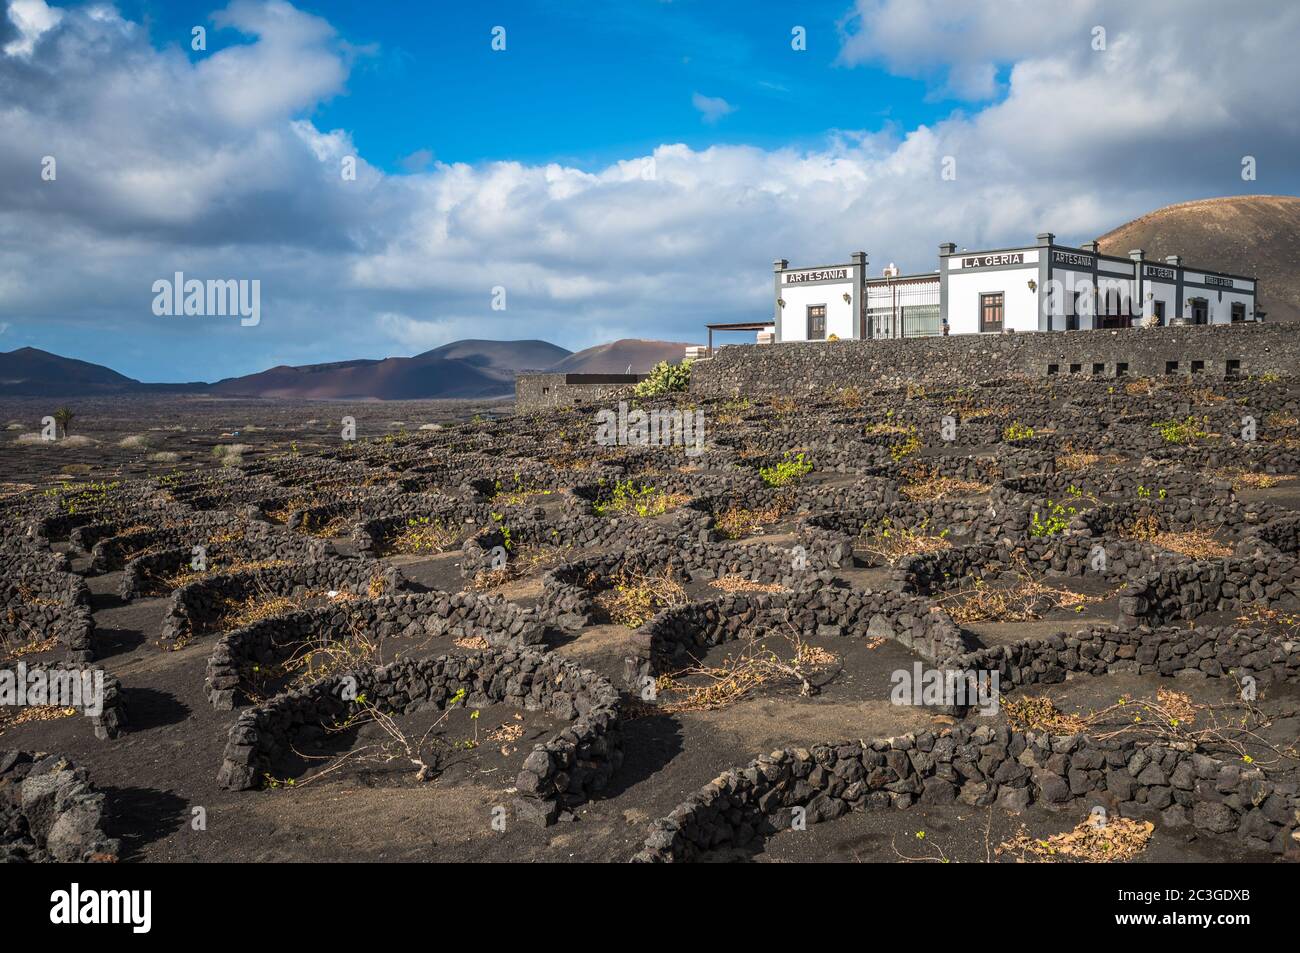 Lanzarote, ESPAÑA - 12 de diciembre de 2017: Viñedos de la Geria y bodega en suelo volcánico de Lanzarote, Islas Canarias. Foto de stock